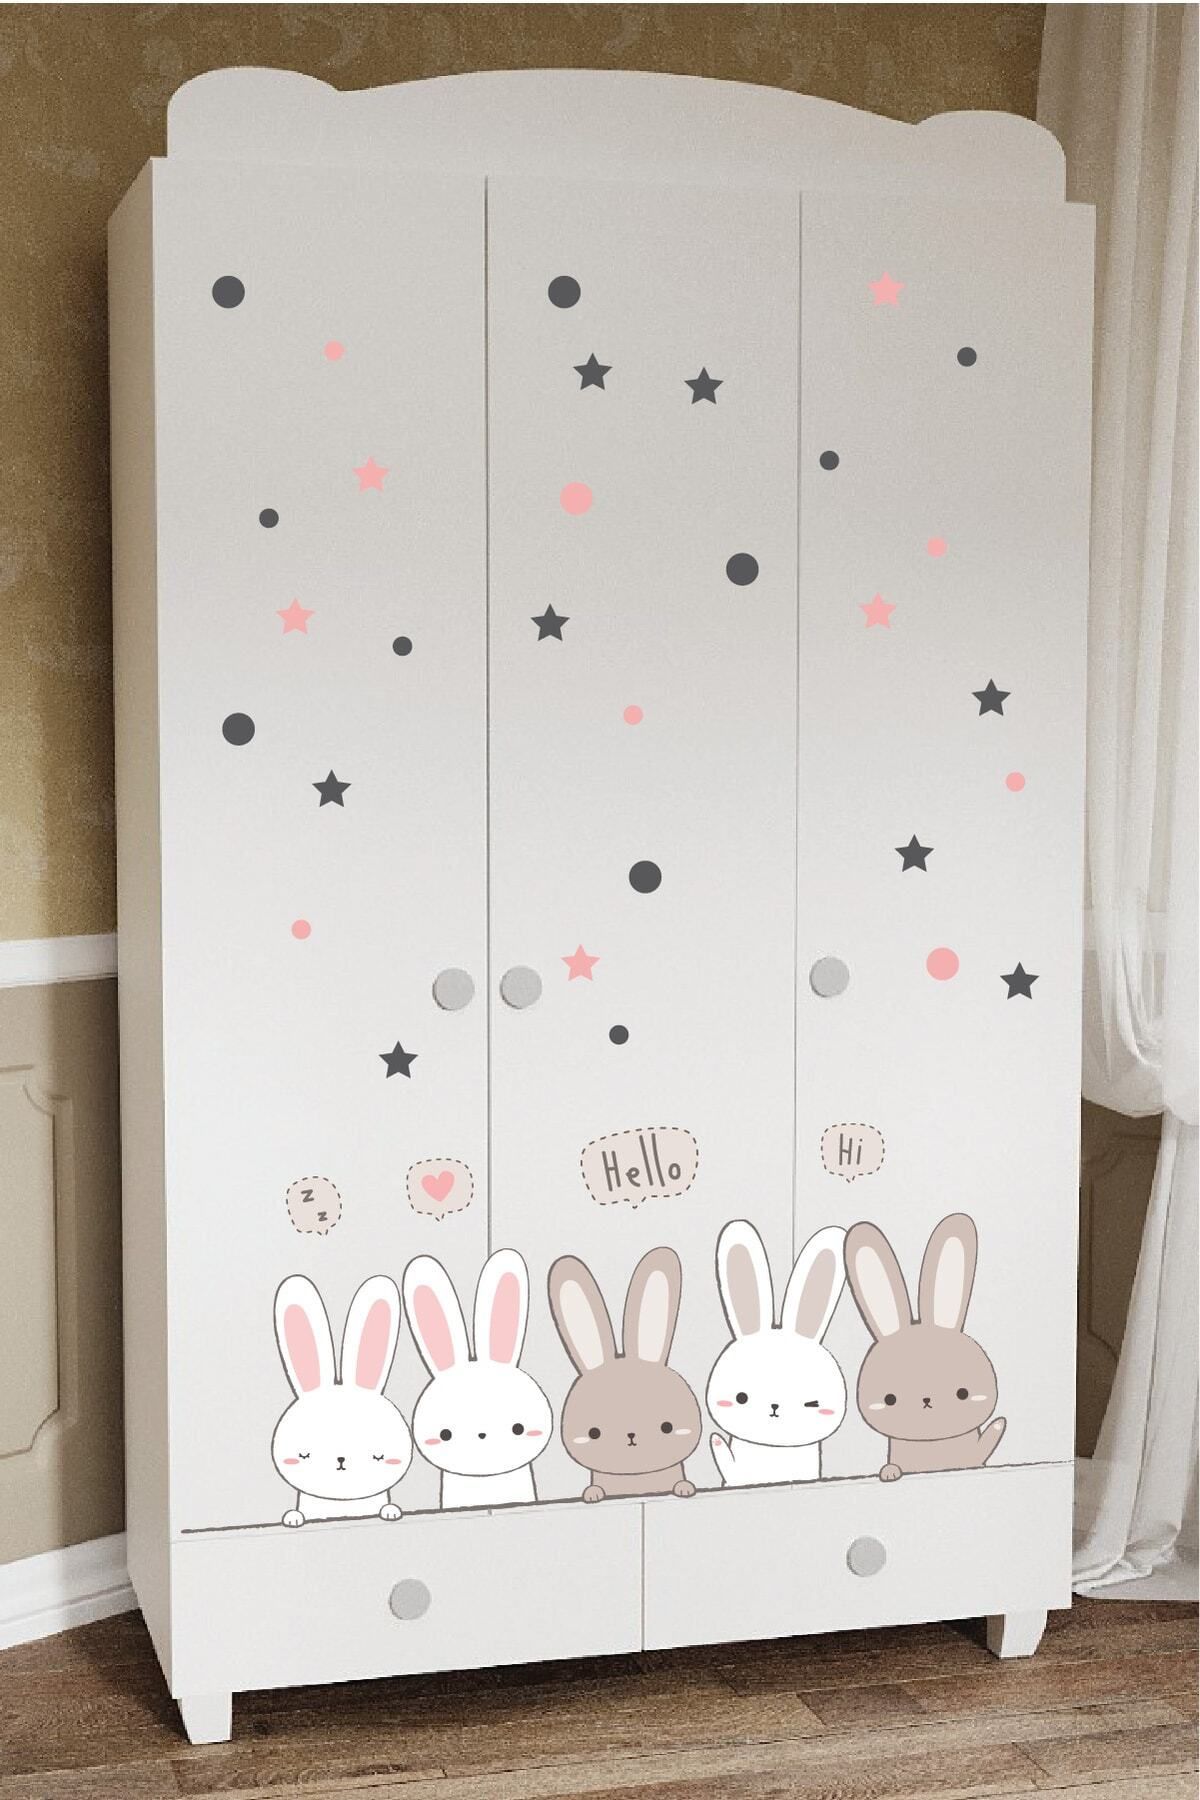 212shop Sevimli Tavşanlar Bebek Çocuk Odası Mobilya Duvar Cam Süsleme Dekor Sticker Seti